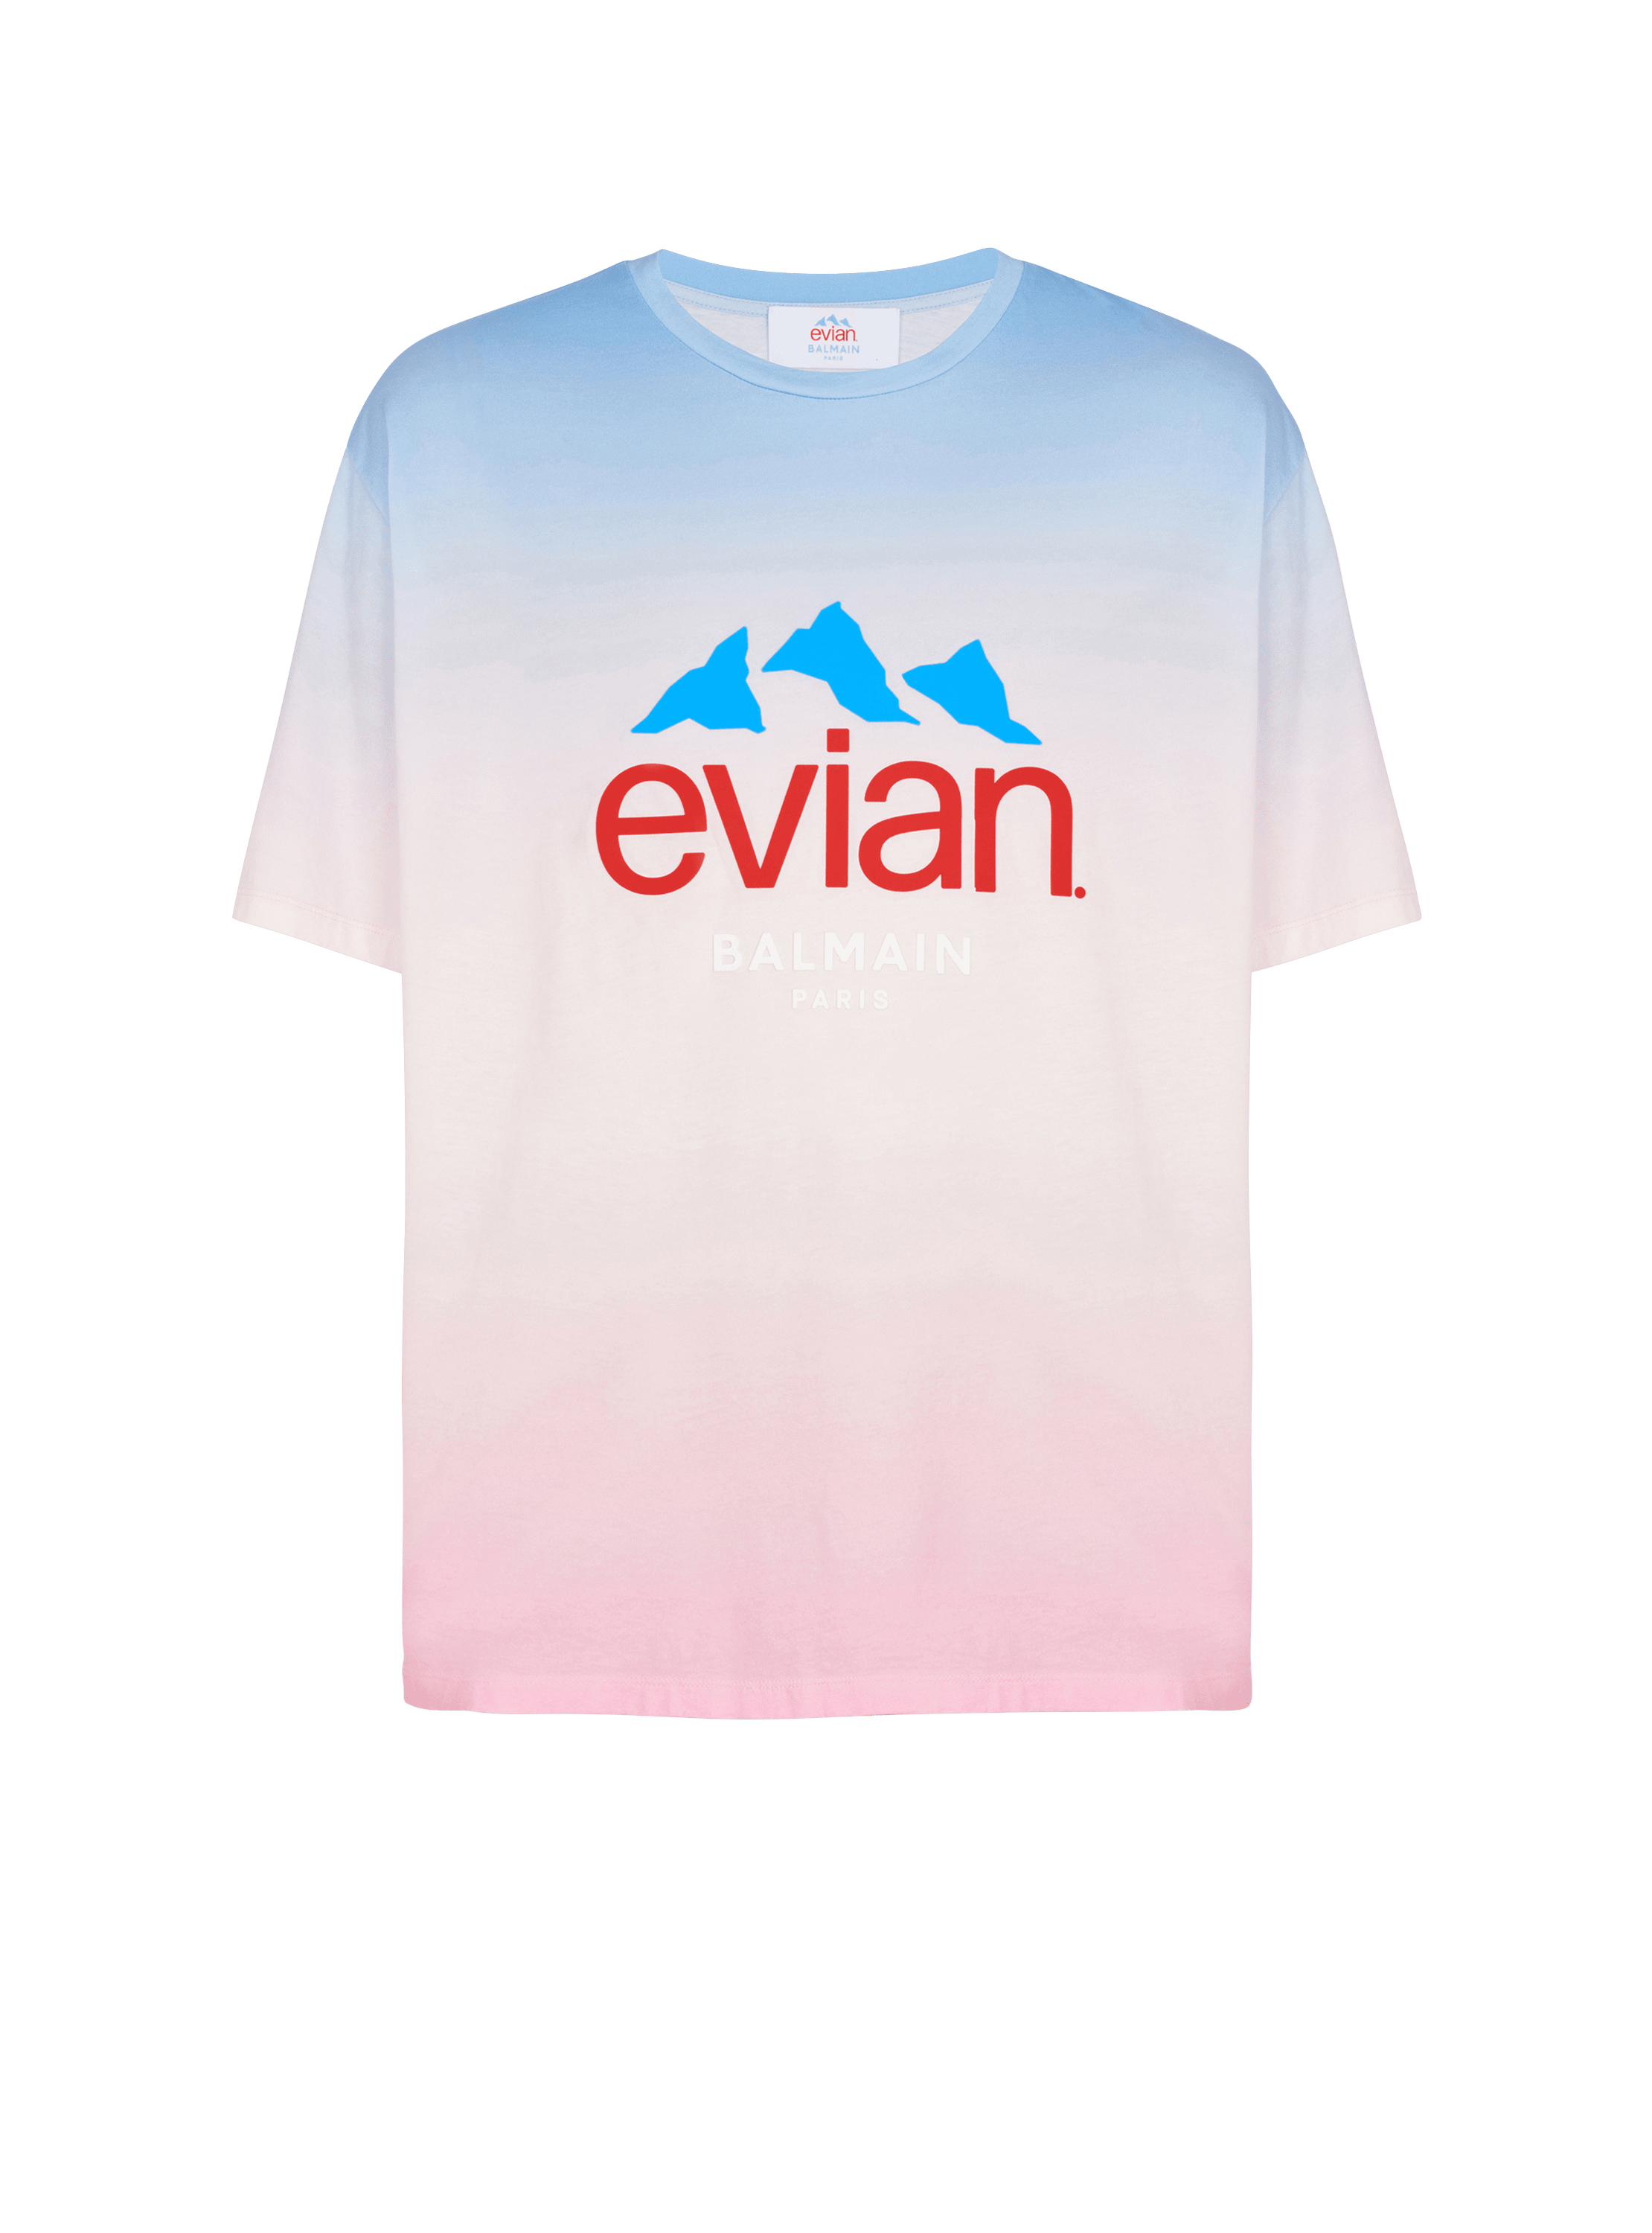 Balmain x Evian - T-shirt dégradé, multicolore, hi-res